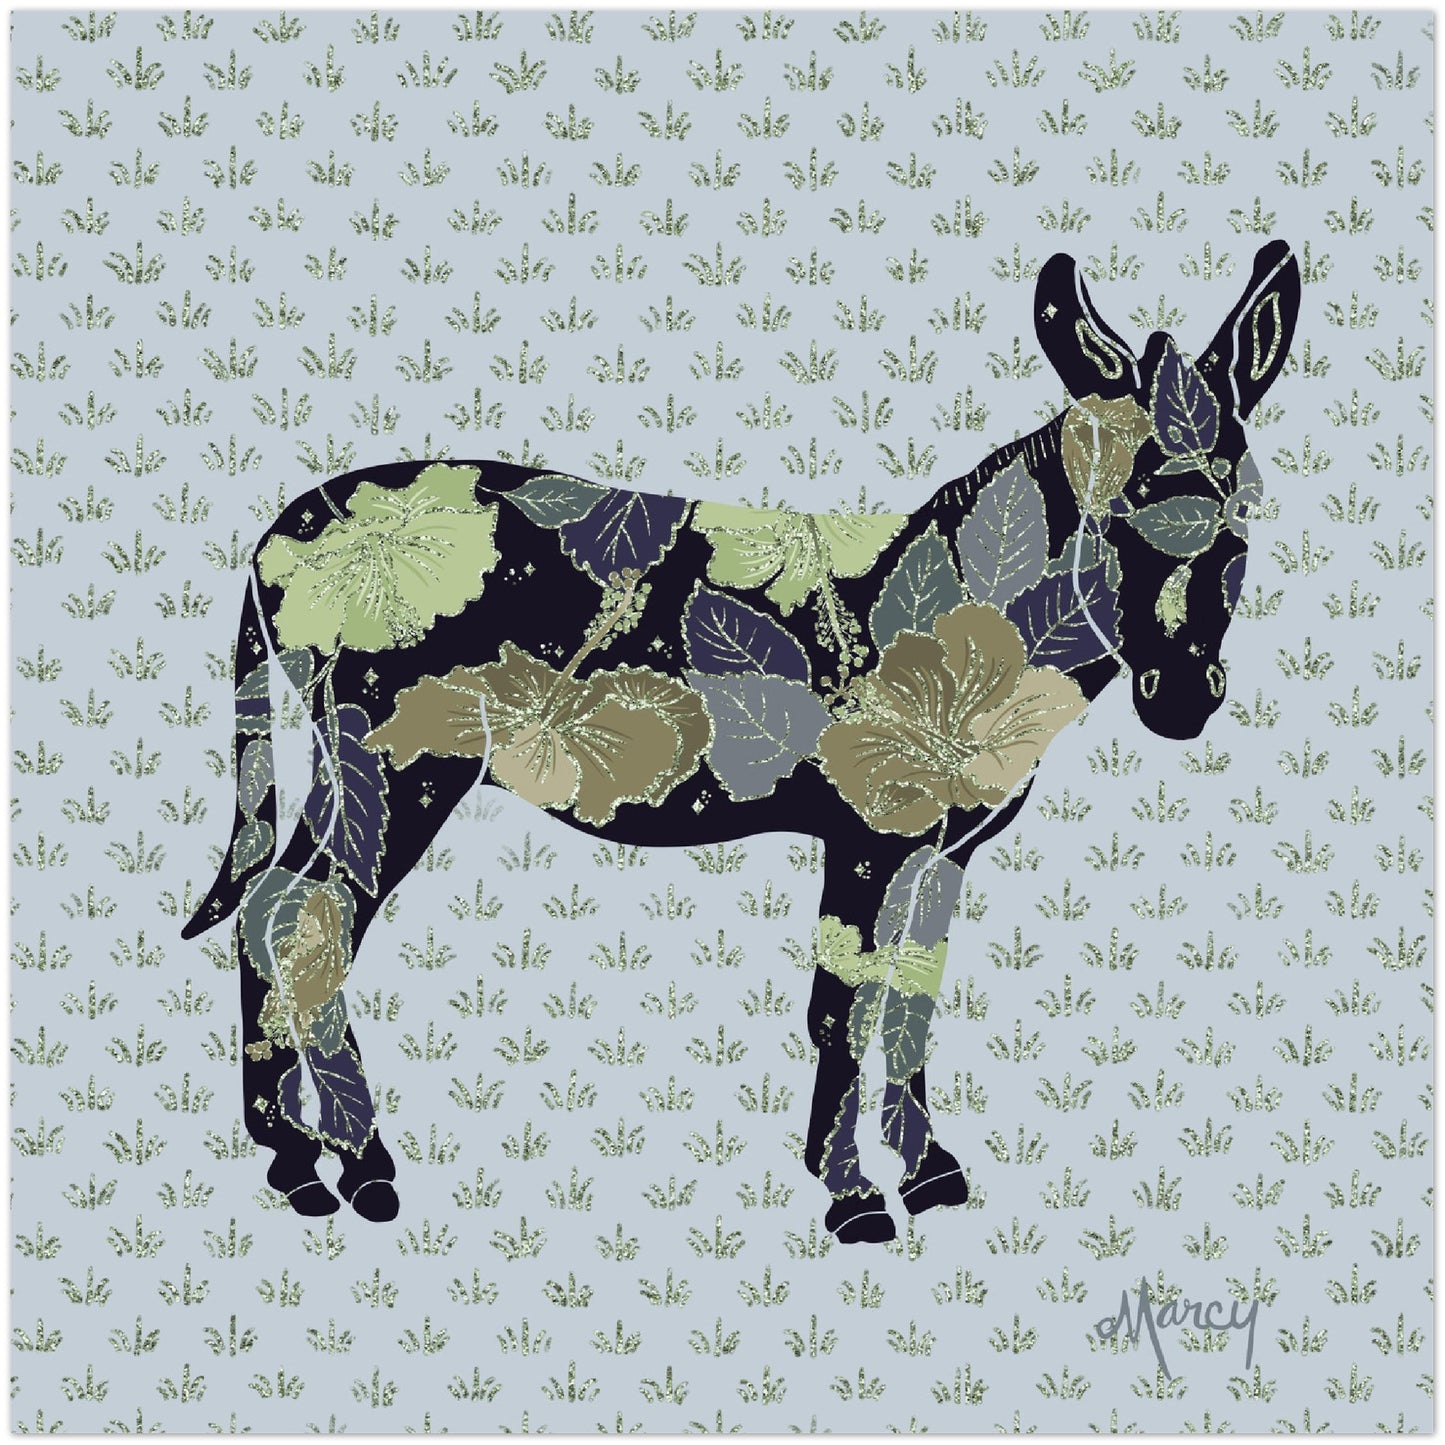 Ava — Floral Donkey Aluminum Print